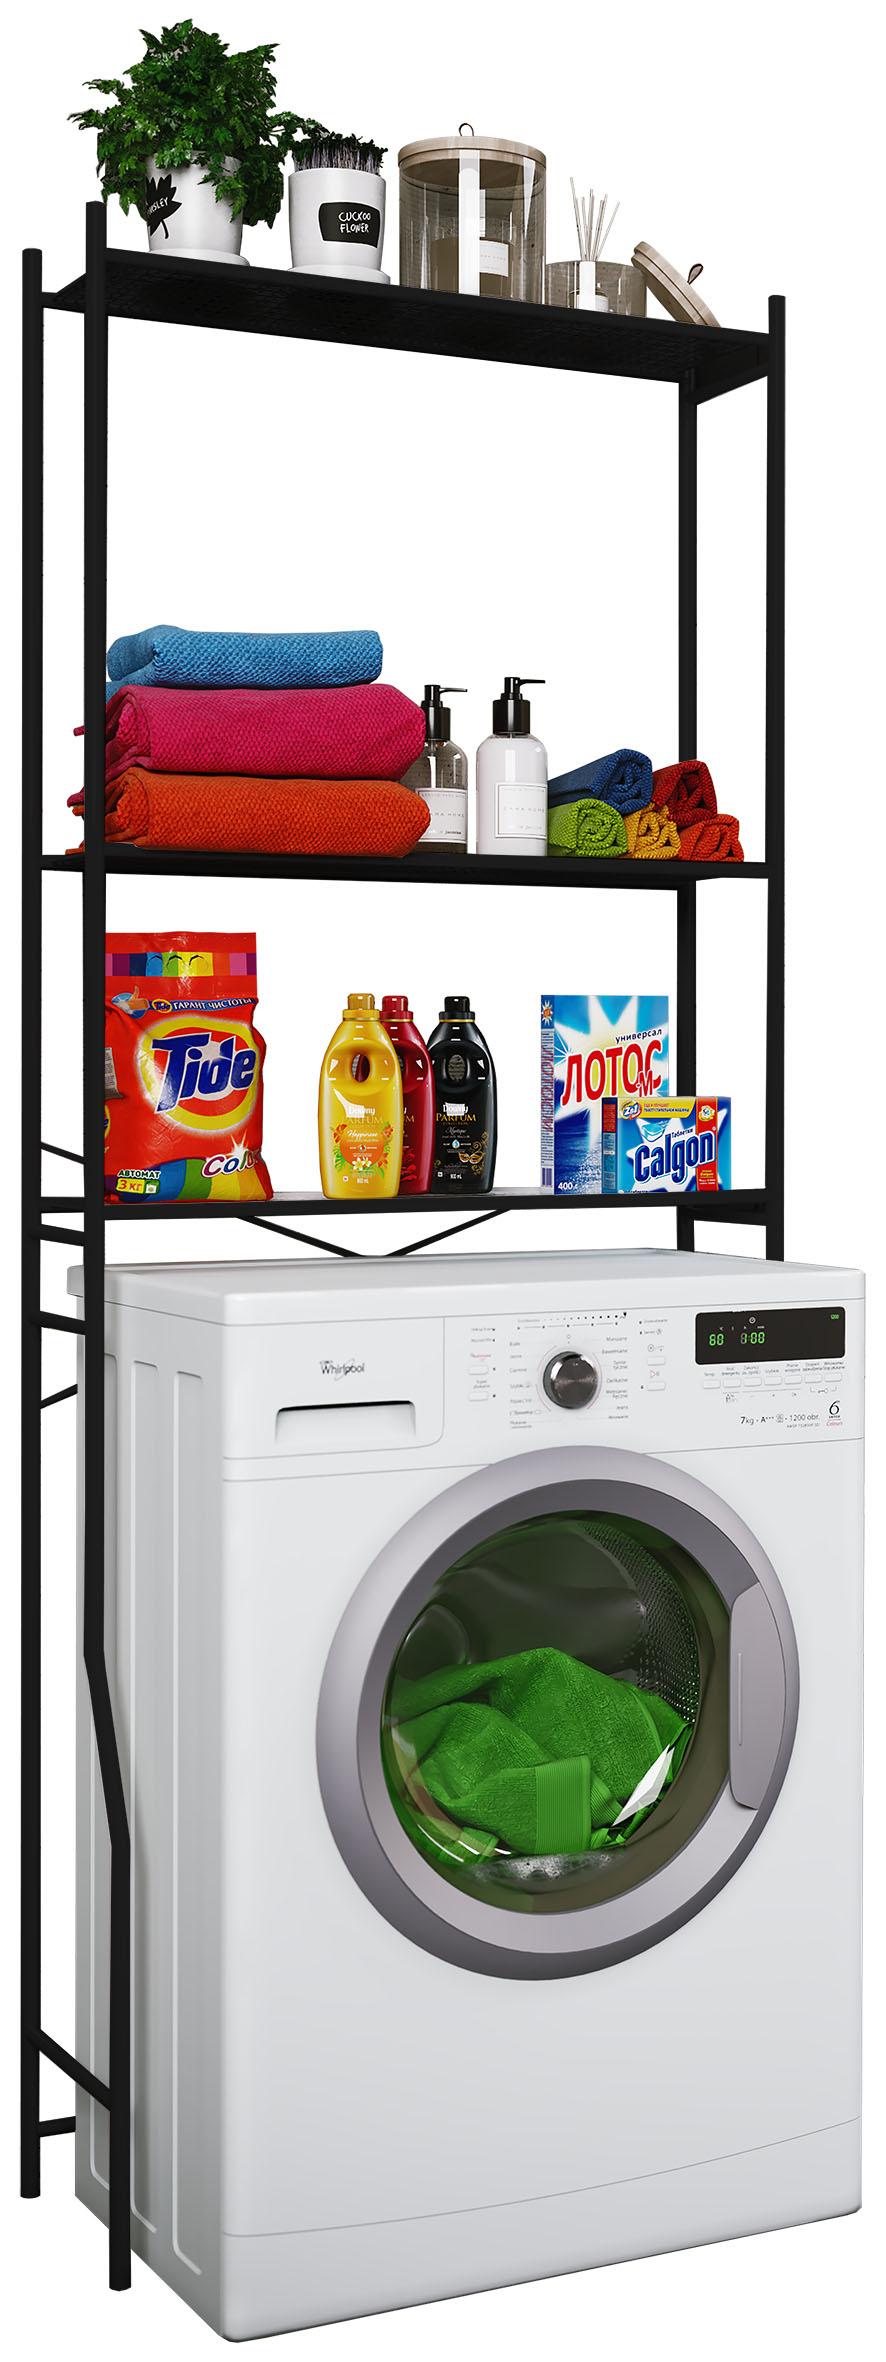 Zerone Waschmaschinen ständer,Waschmaschinenregal Überbauregal Waschmaschine Bad-Regal mit 2 Ablagen 63 x 39,5 x 120 cm weiß 